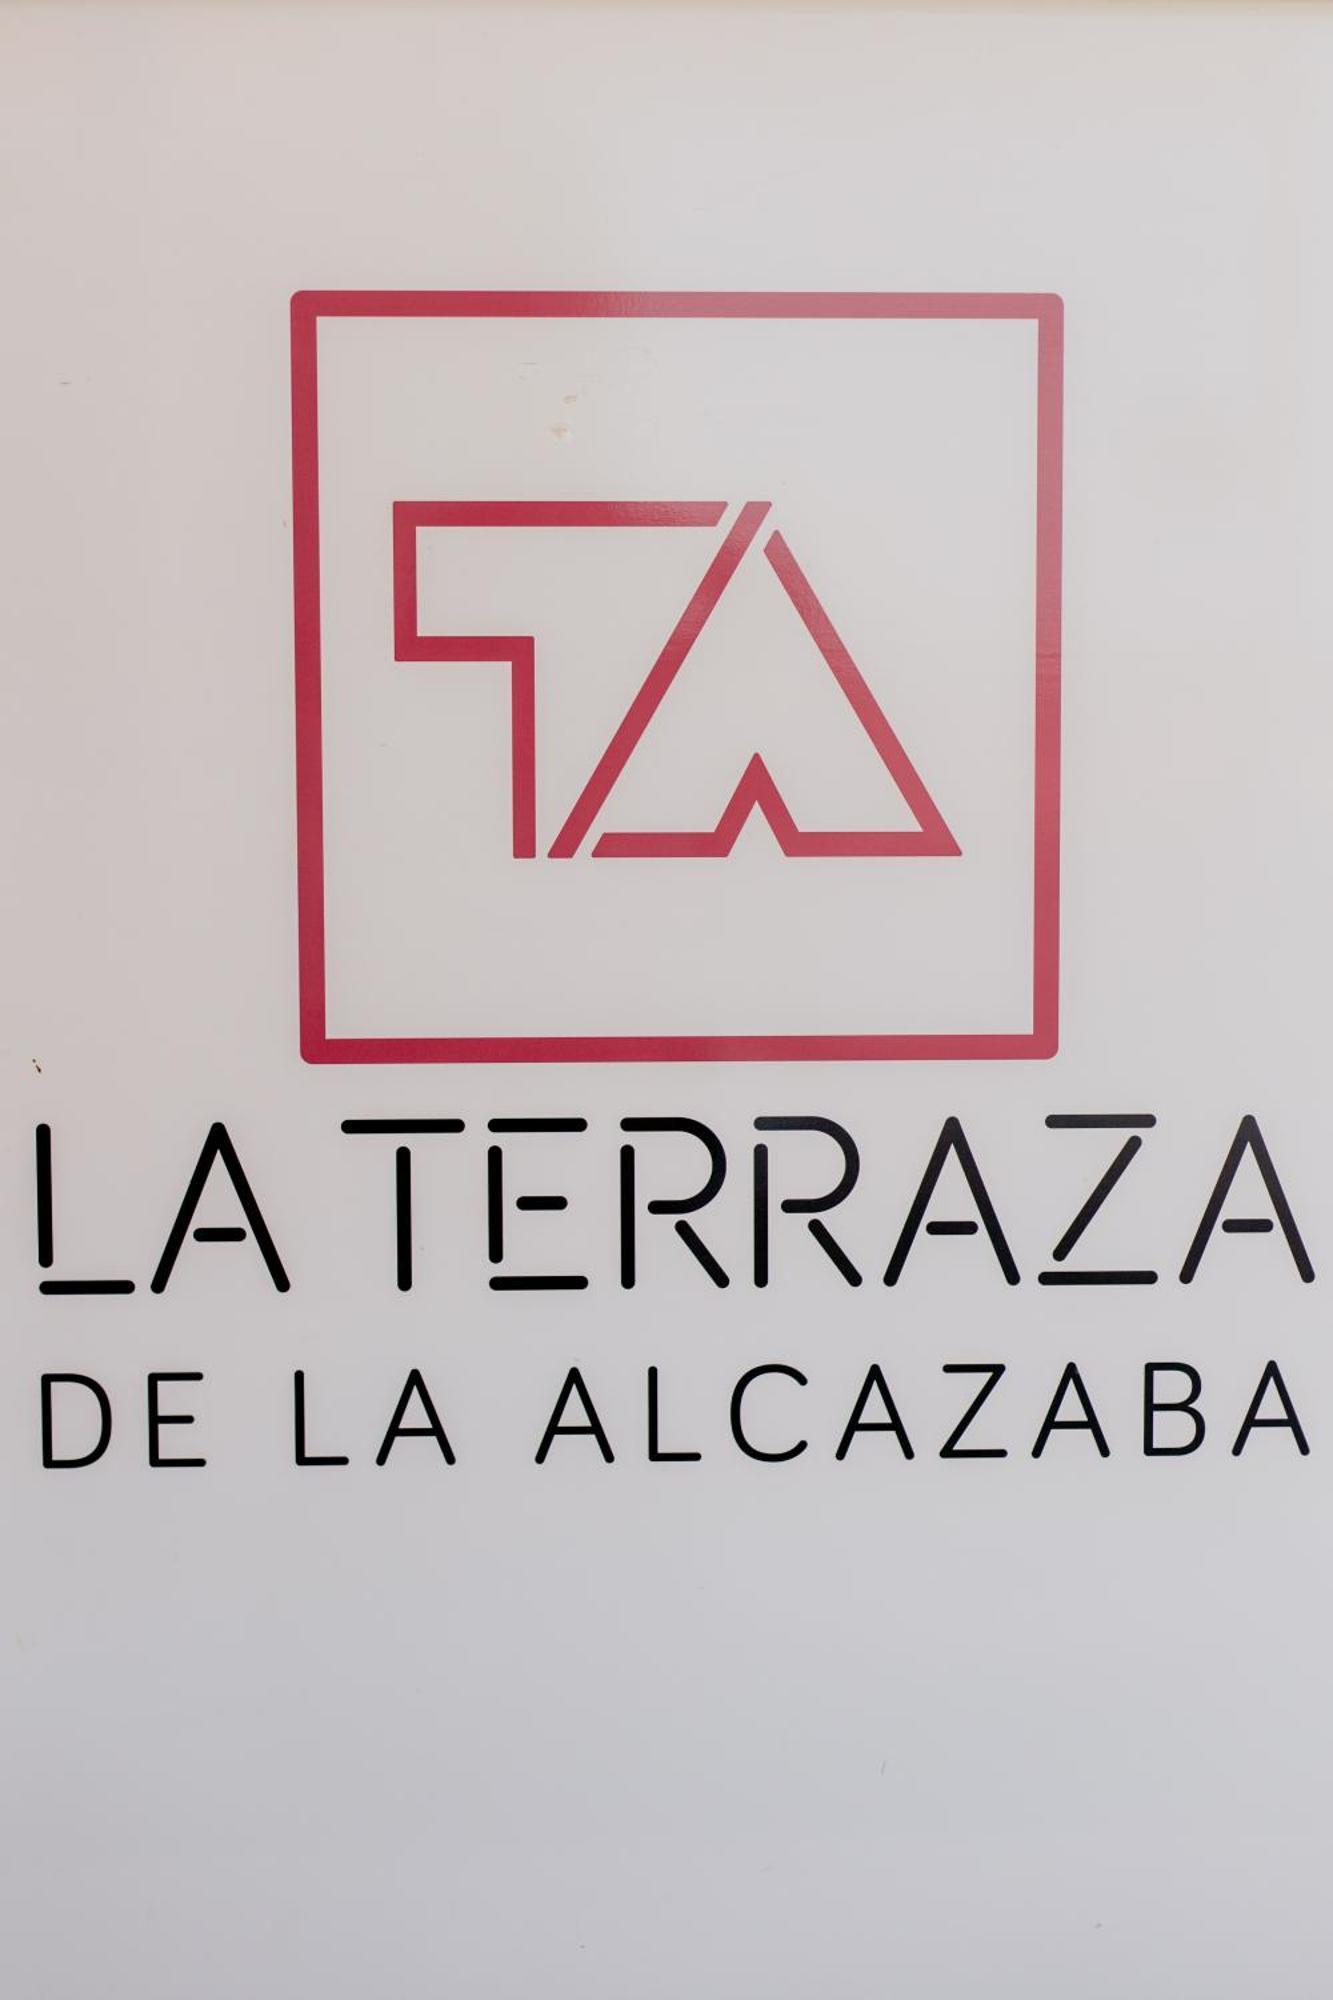 Alcazaba Premium Hotel Малага Екстер'єр фото